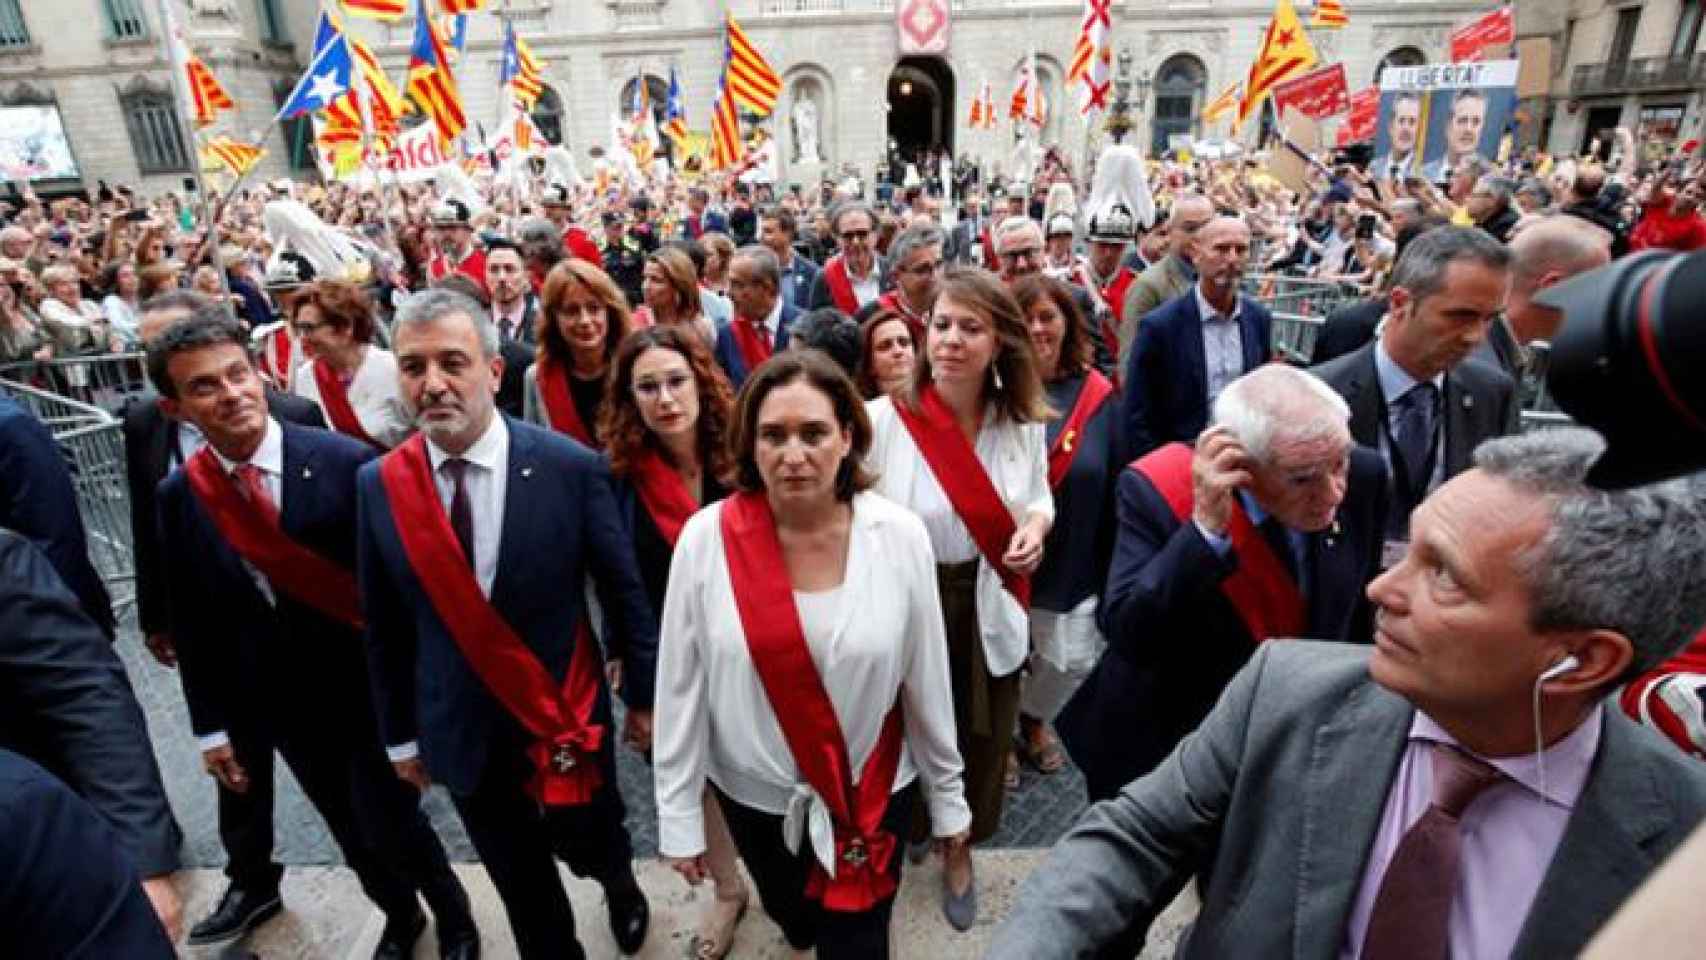 Ada Colau sufrió insultos machistas al cruzar la plaza Sant Jaume por parte de radicales independentistas el día de su investidura / CCMA